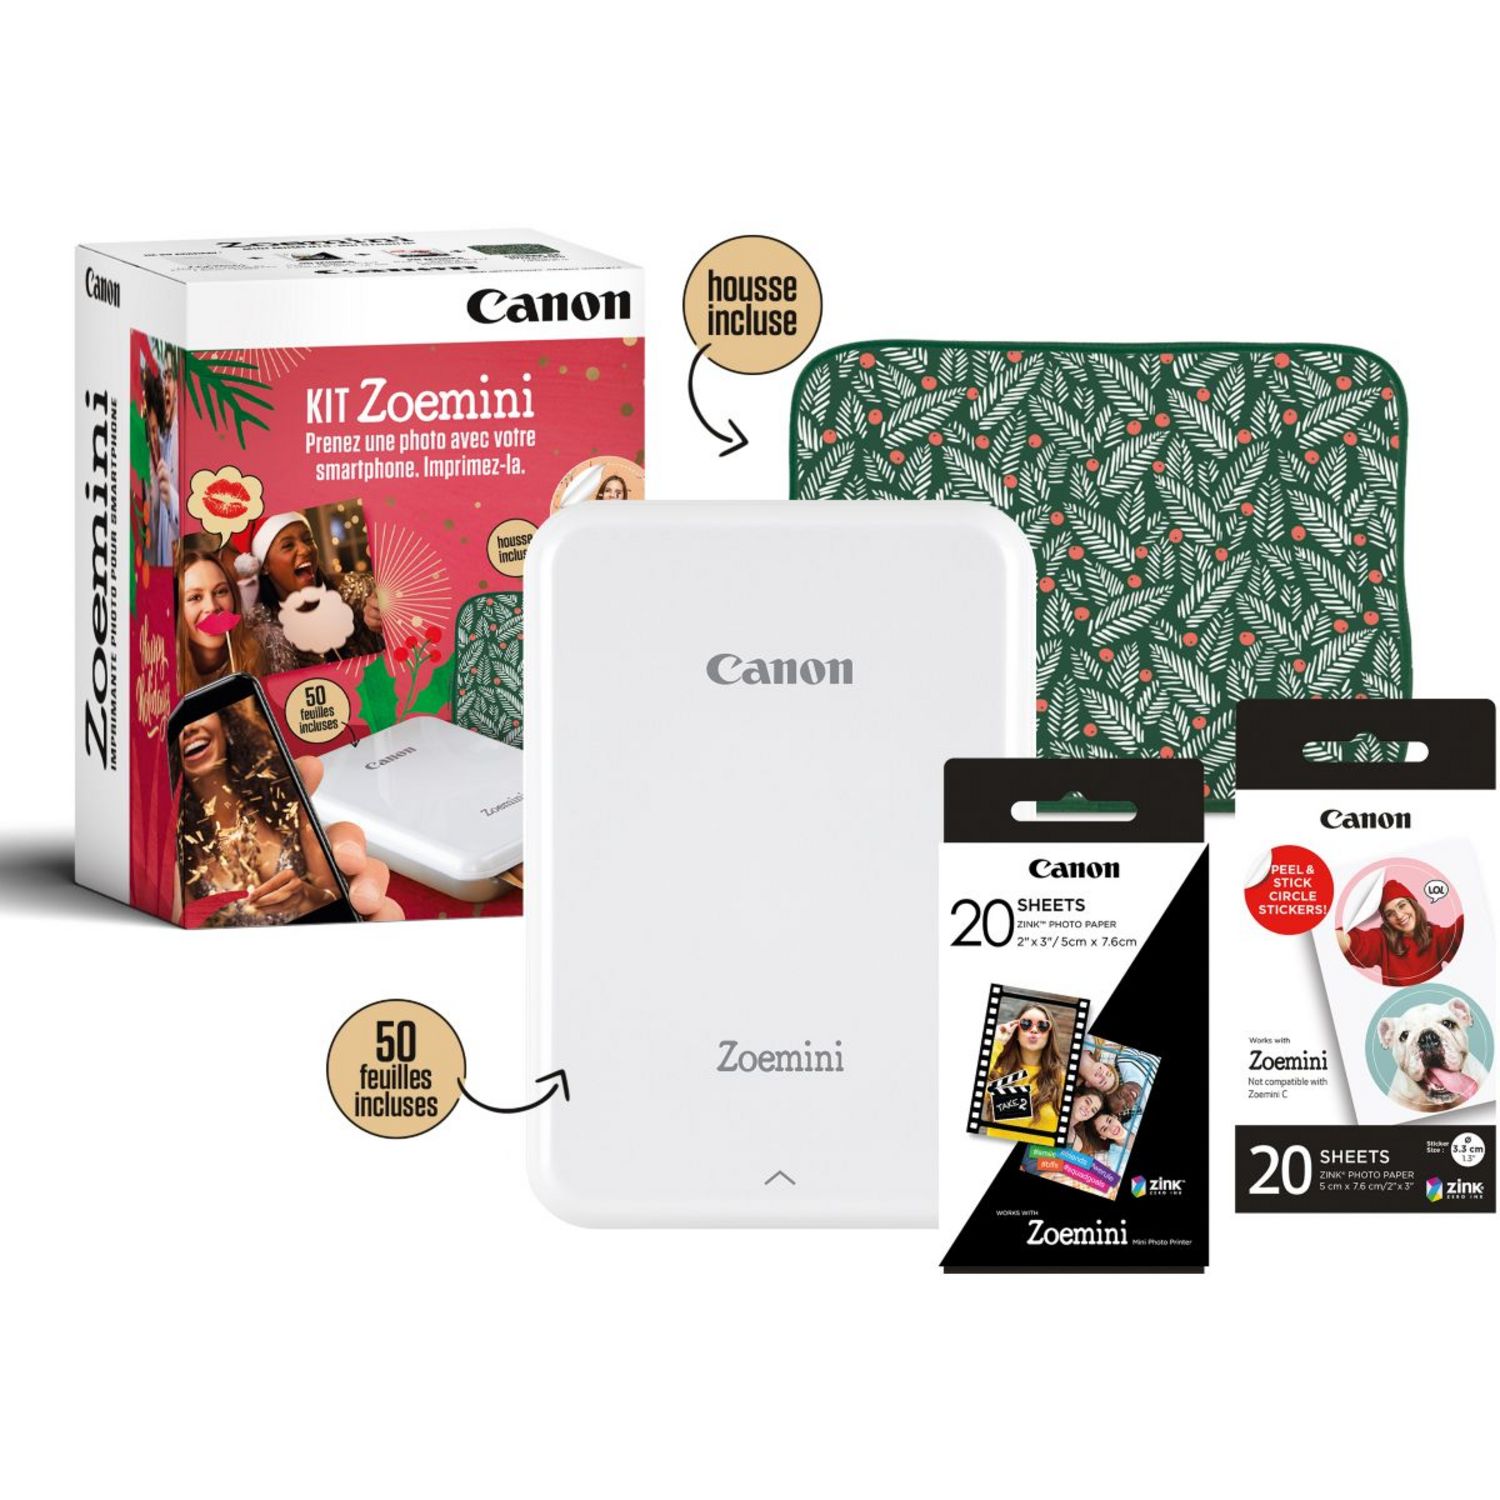 Imprimante photo portable Canon Zoemini Blanc - Imprimante photo